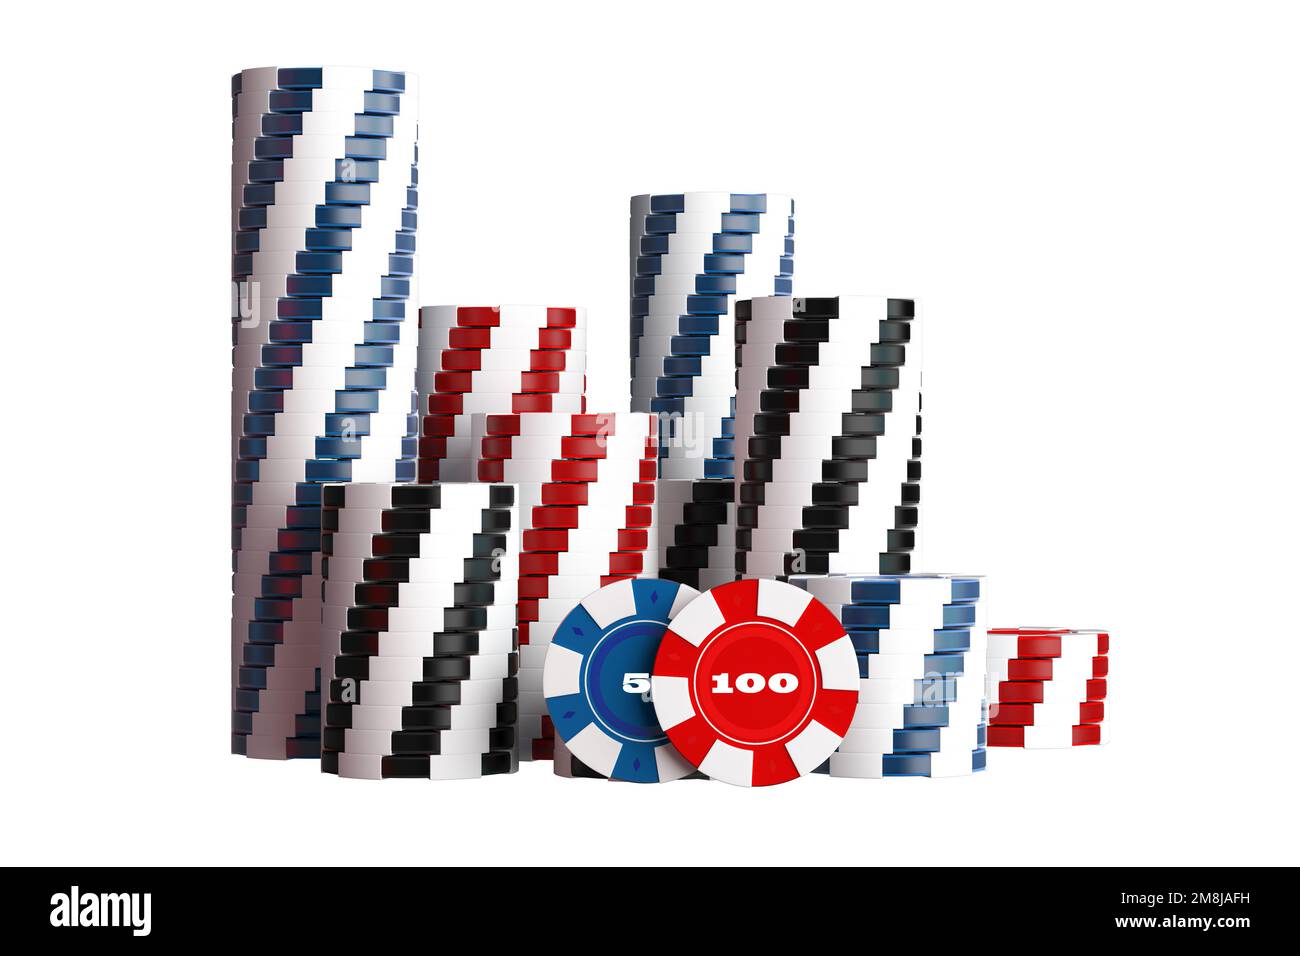 Pile de jetons de jeu de casino isolés sur blanc 3D rendu Illustration. Banque D'Images